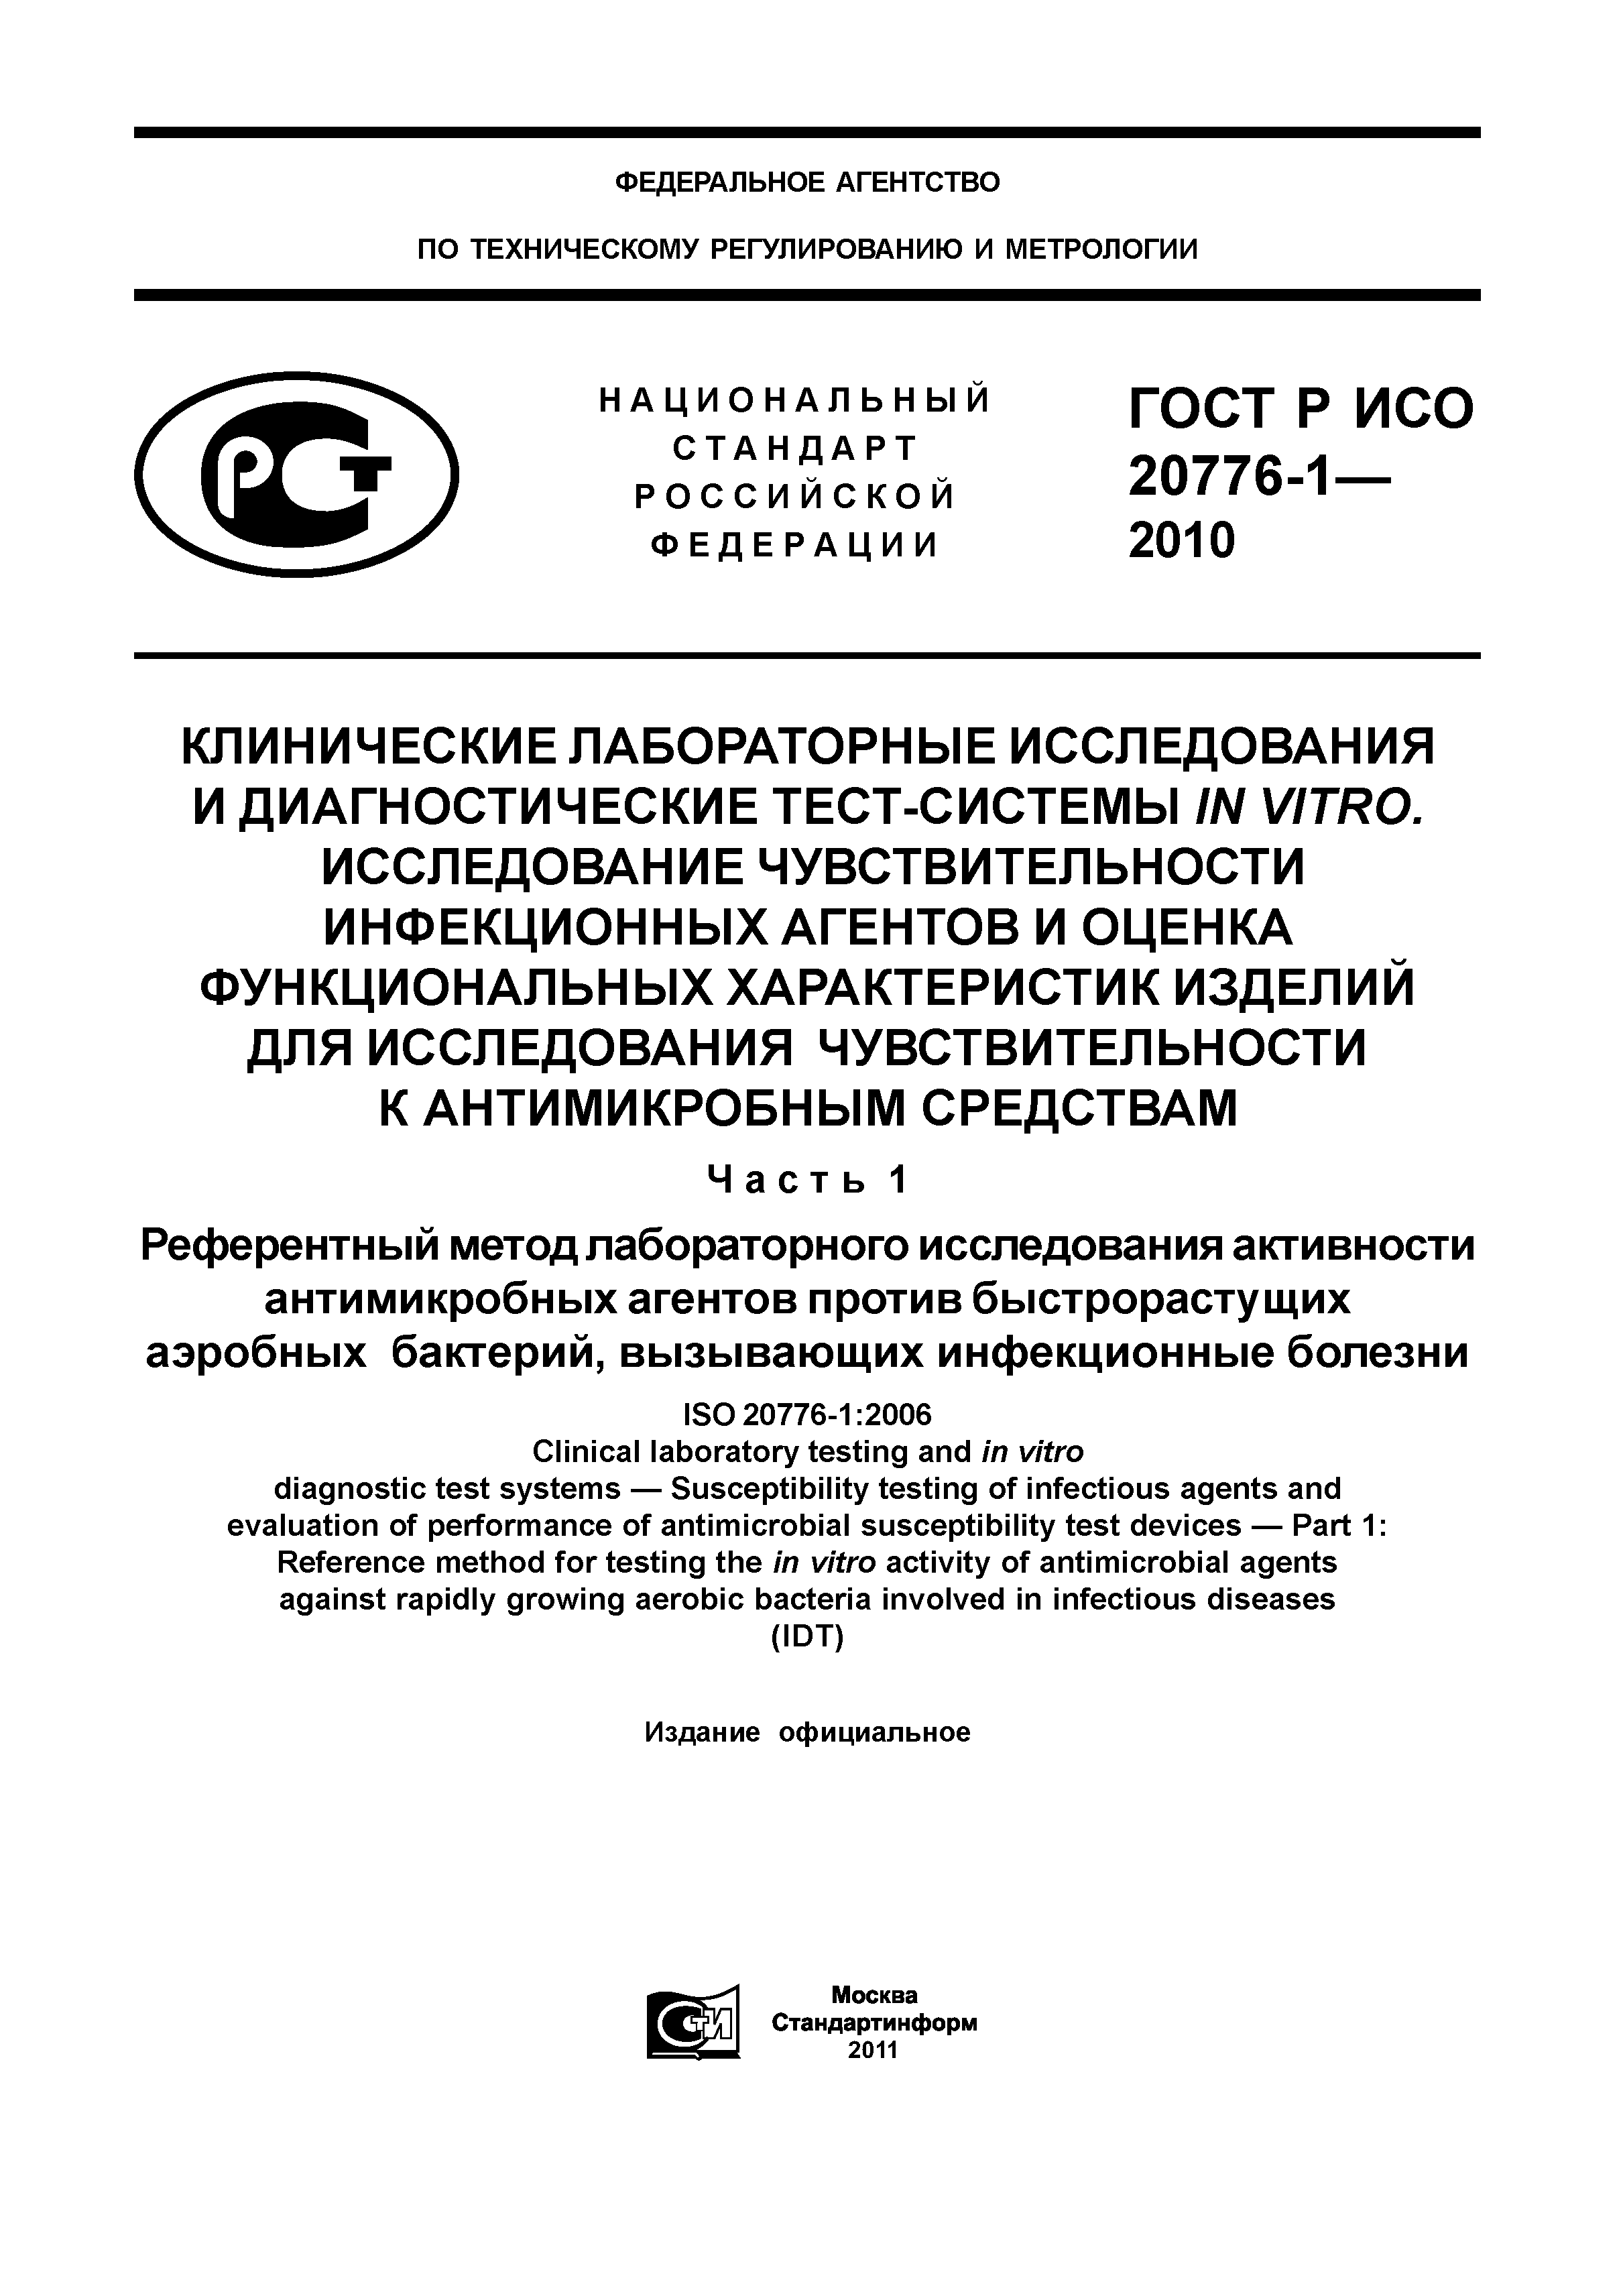 ГОСТ Р ИСО 20776-1-2010